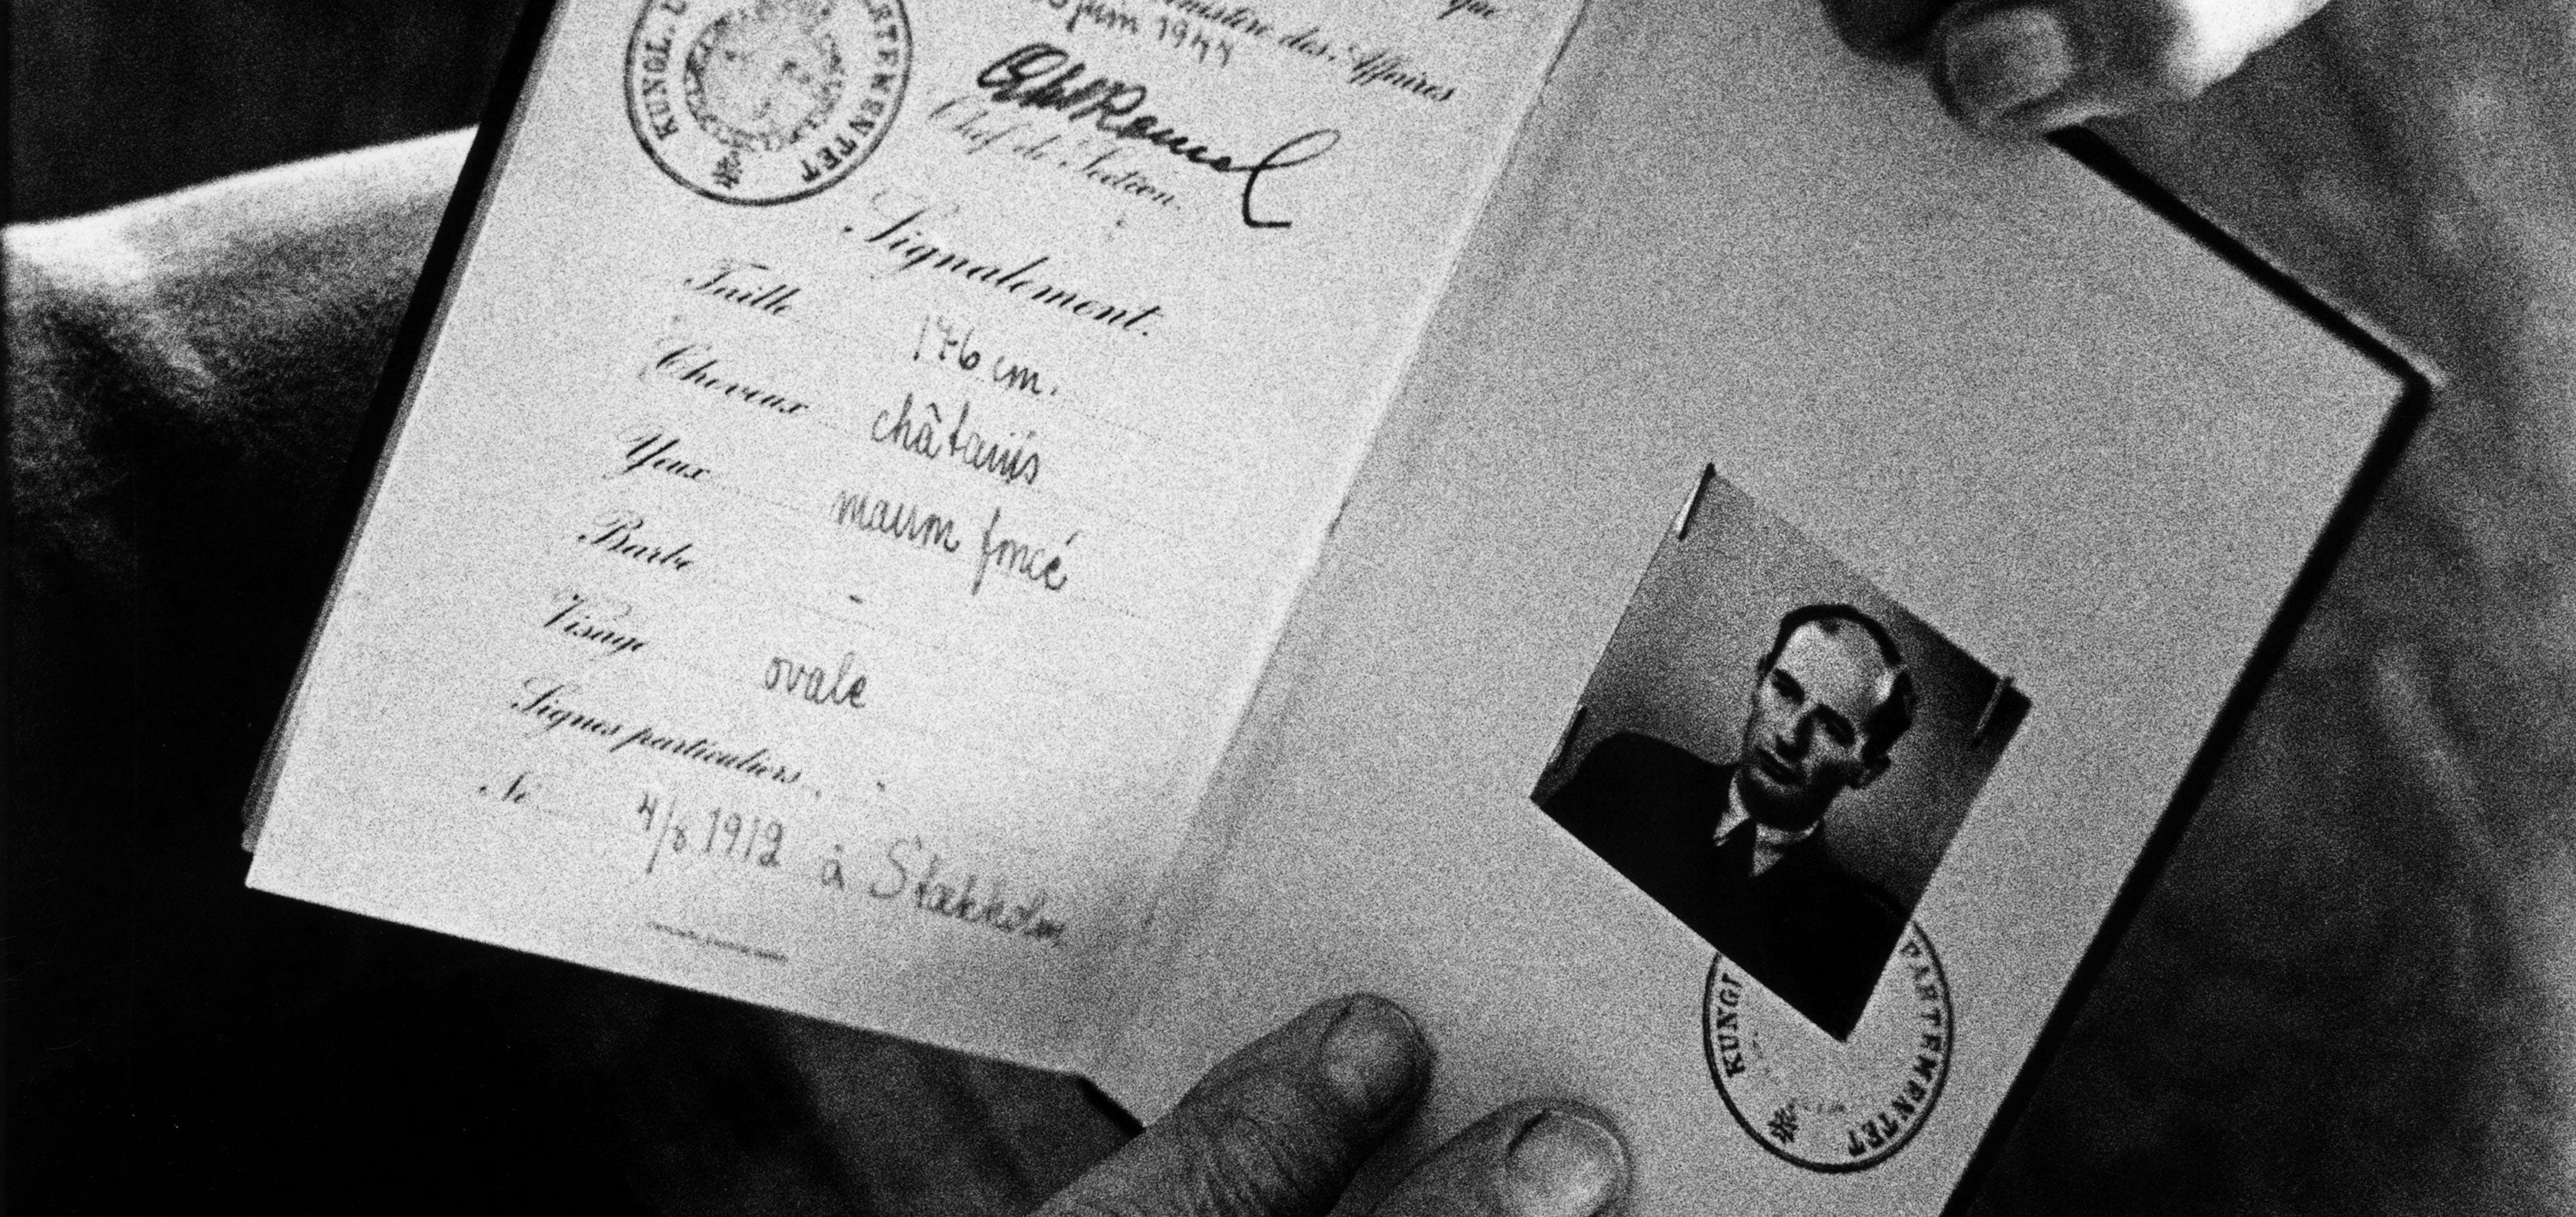 Raoul Wallenberg's passport